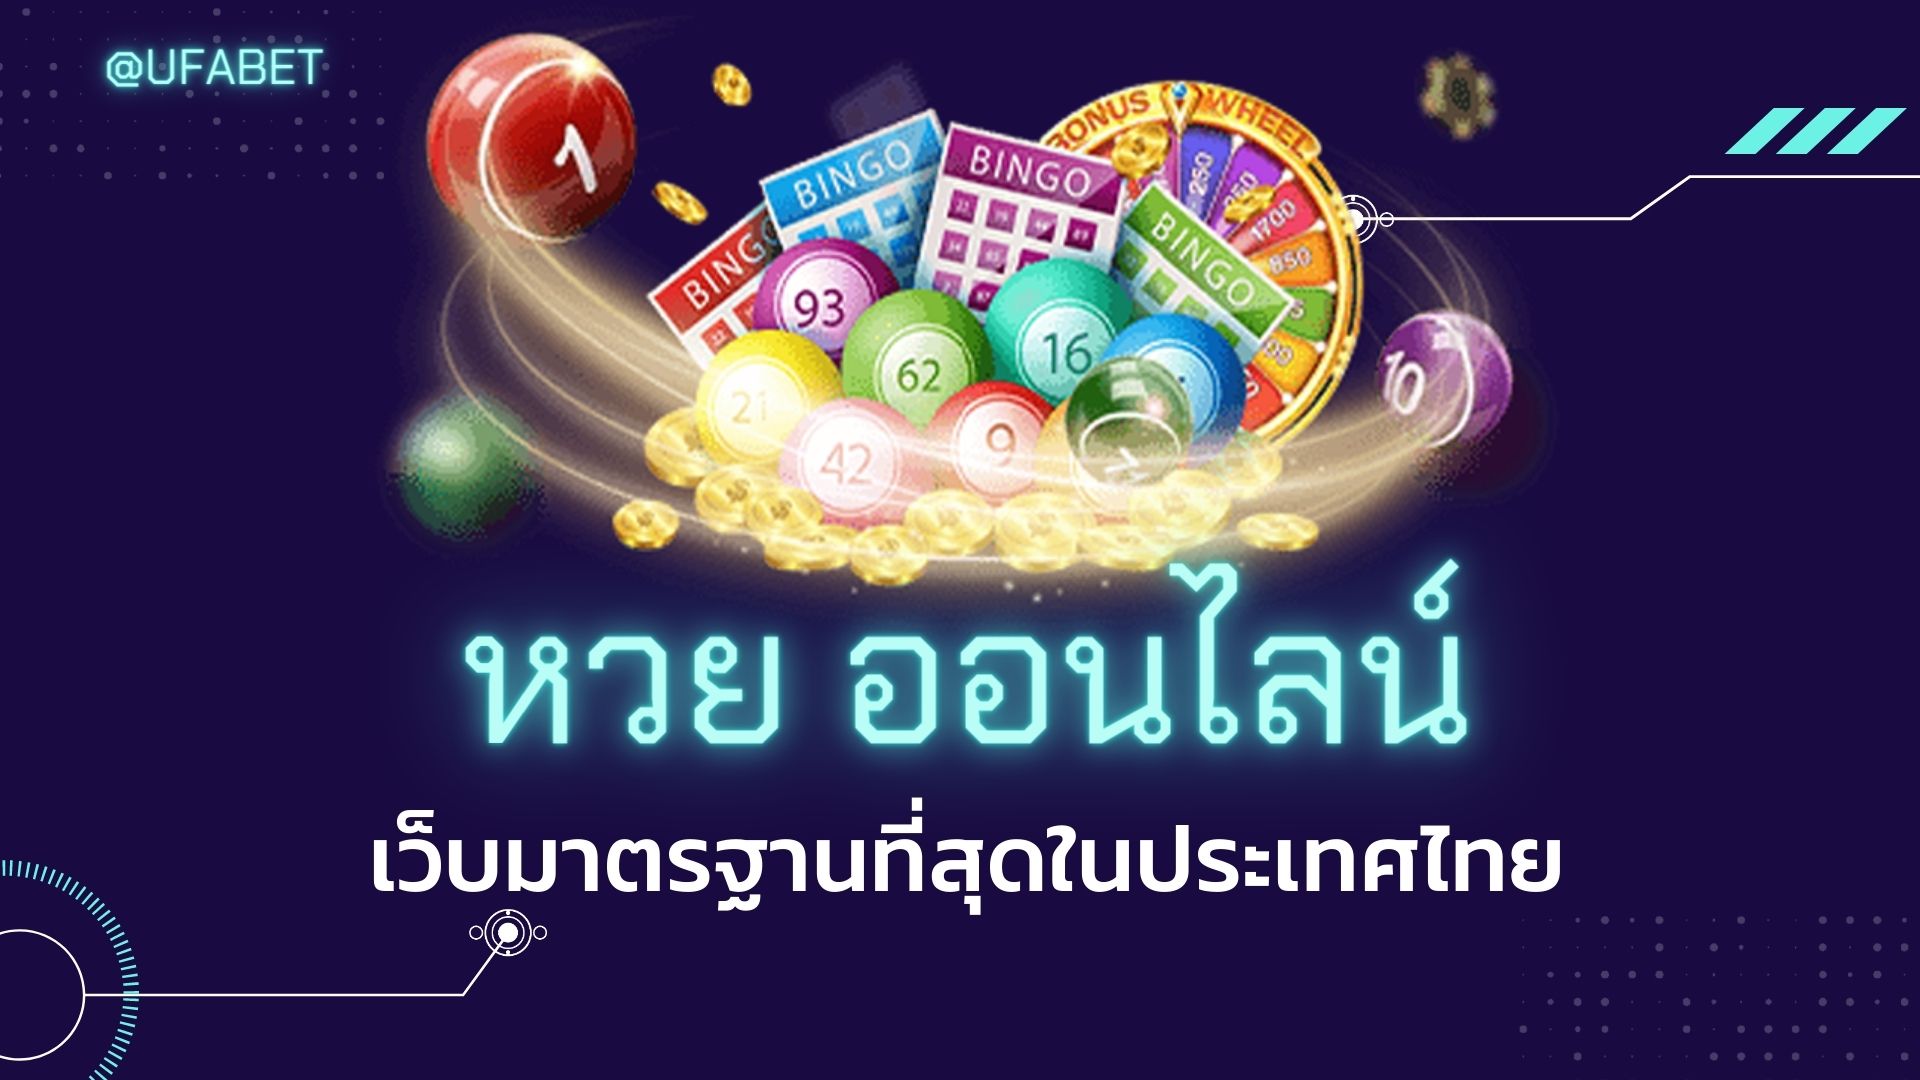 หวย ออนไลน์ เว็บมาตรฐานที่สุดในประเทศไทย